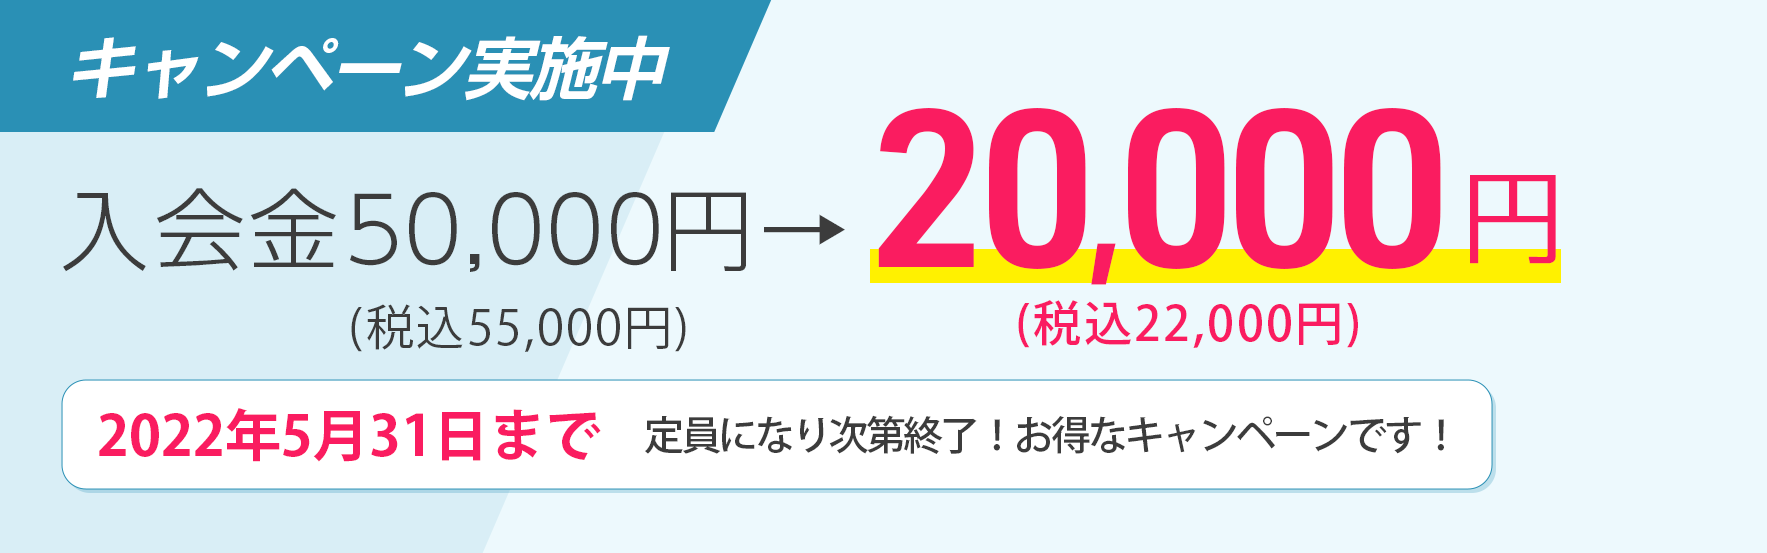 入会金55,000円→22,000円 キャンペーン実施中